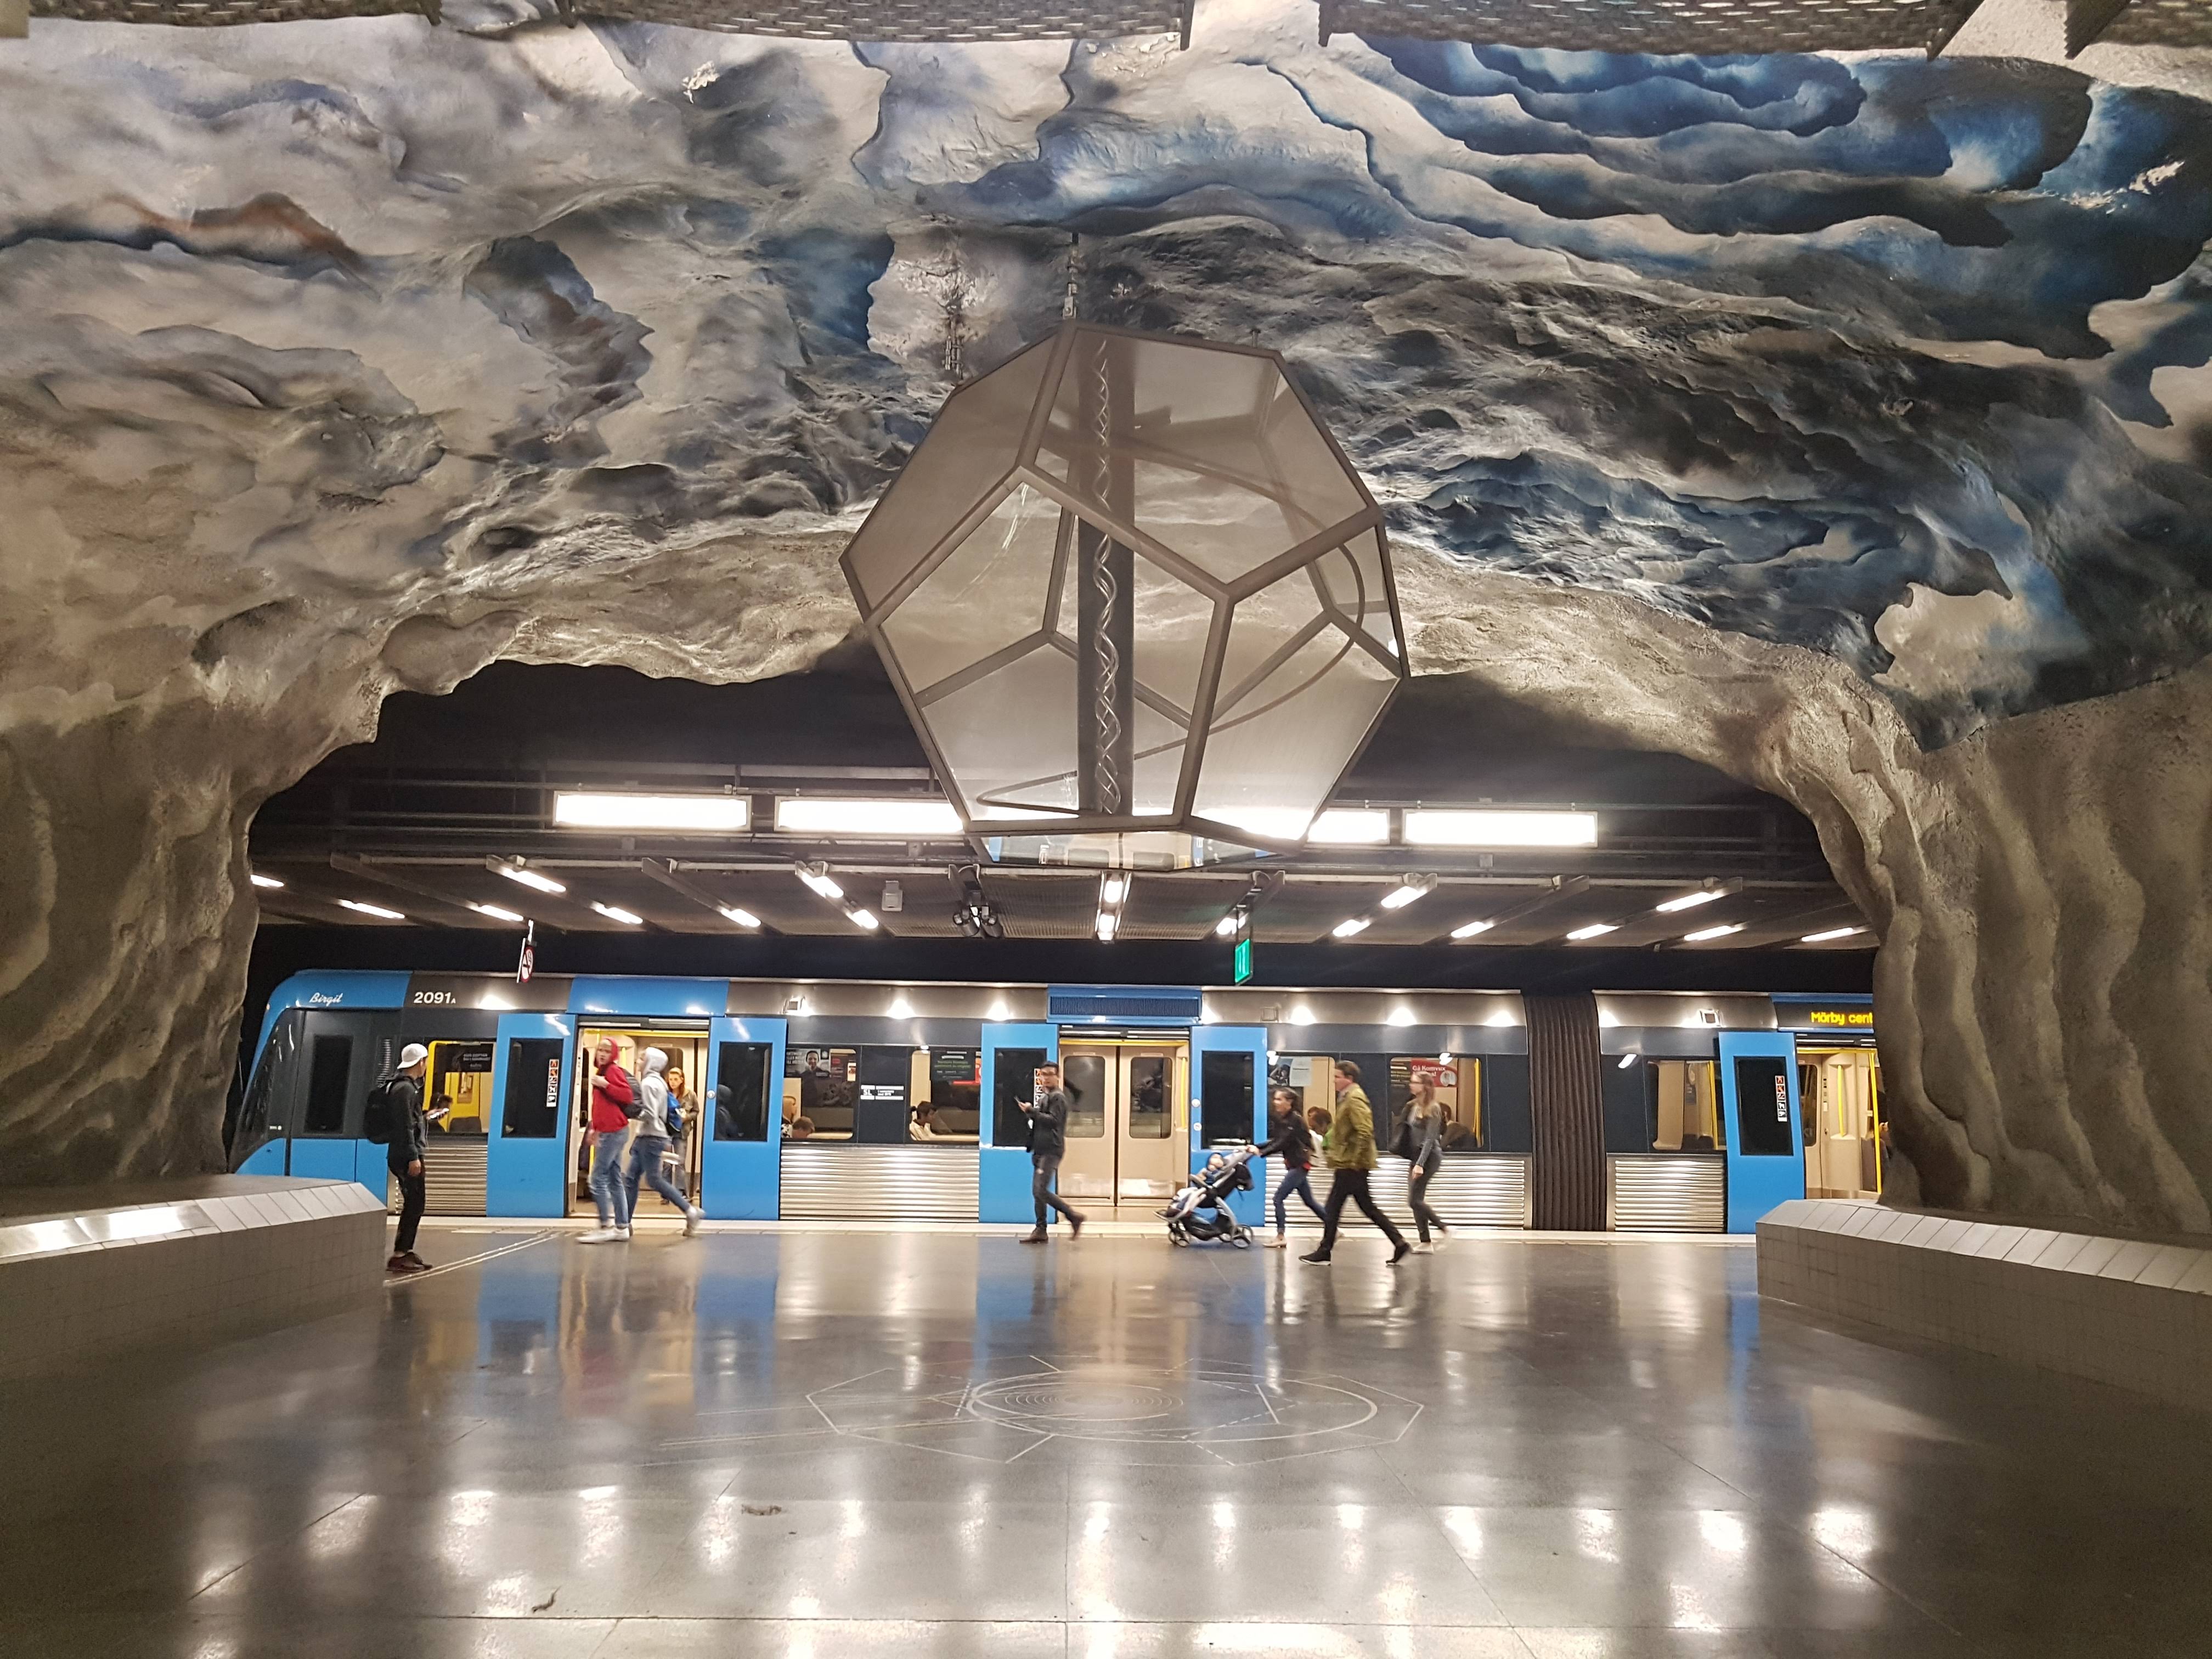 Stockholm metro - Tekniska högskolan station 